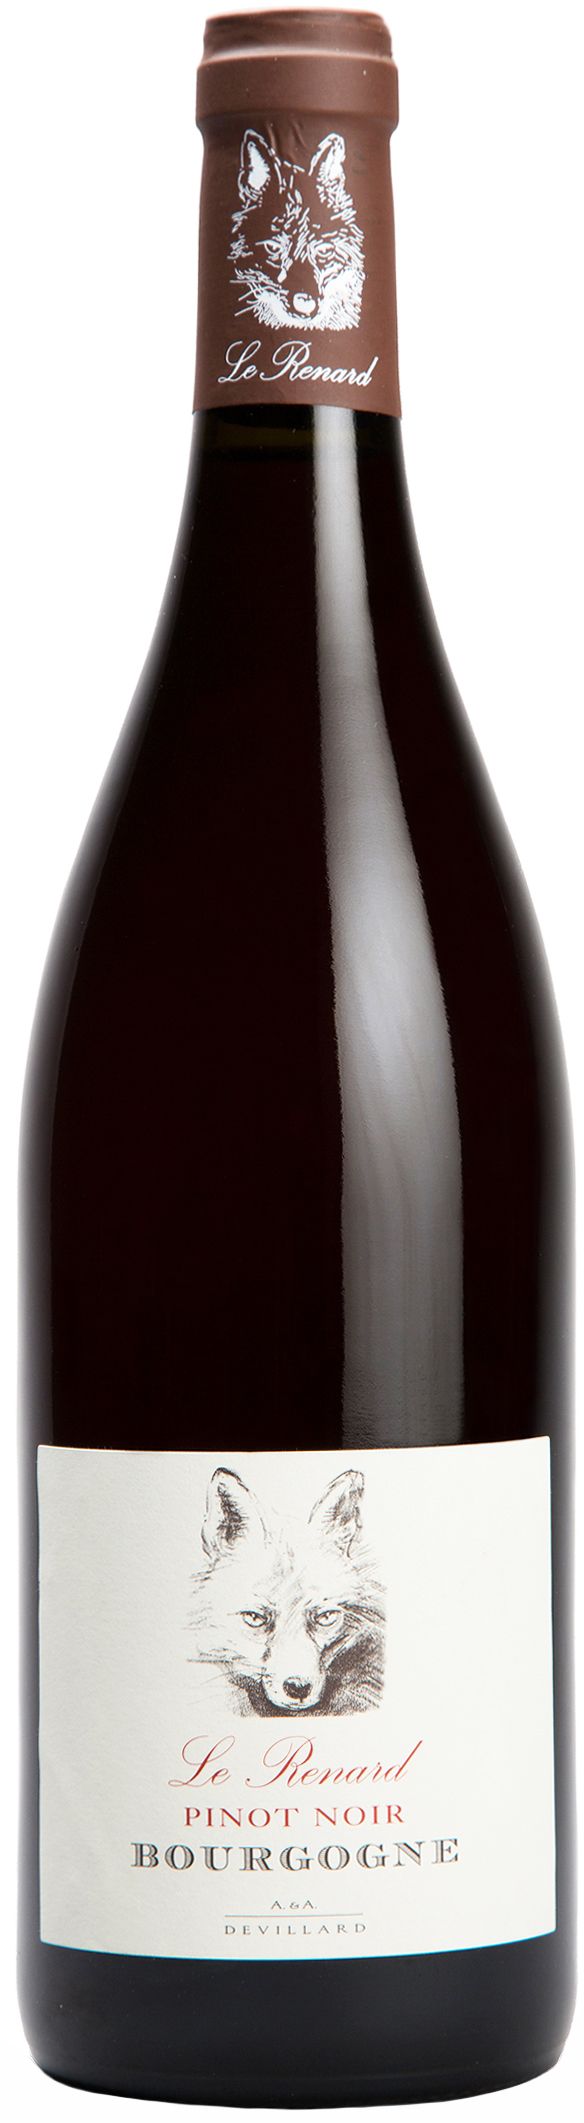 Chateau De Chamirey, Le Renard Pinot Noir Bourgogne, 2018